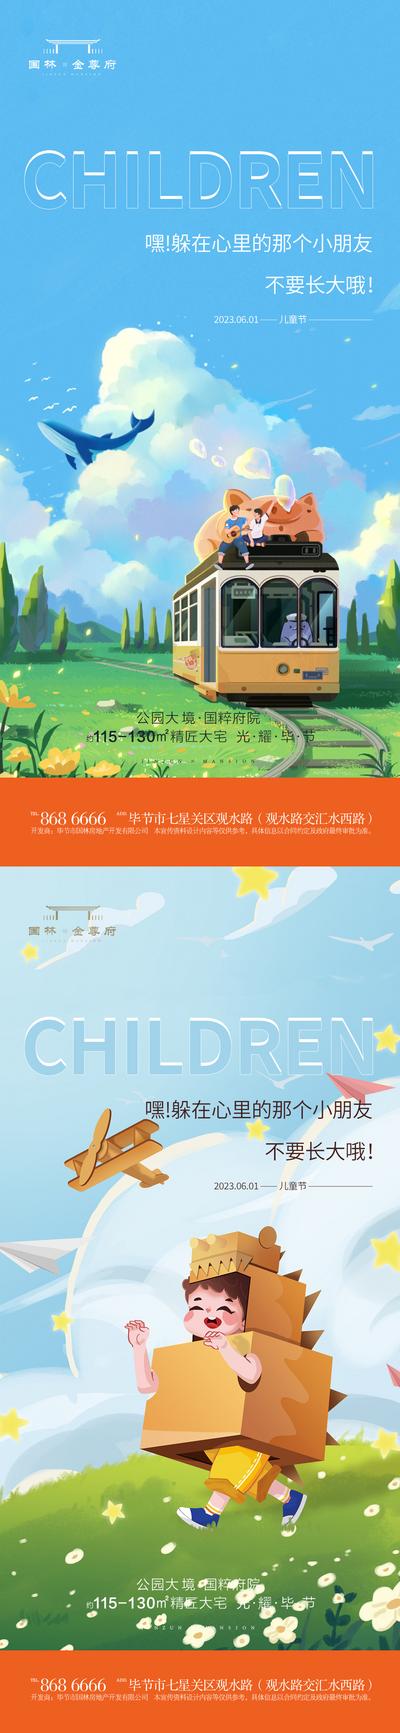 南门网 海报 插画 节日 儿童节 价值 星辰 山川 儿童 六一 小孩 夜景 园林 环境 微信稿 单张